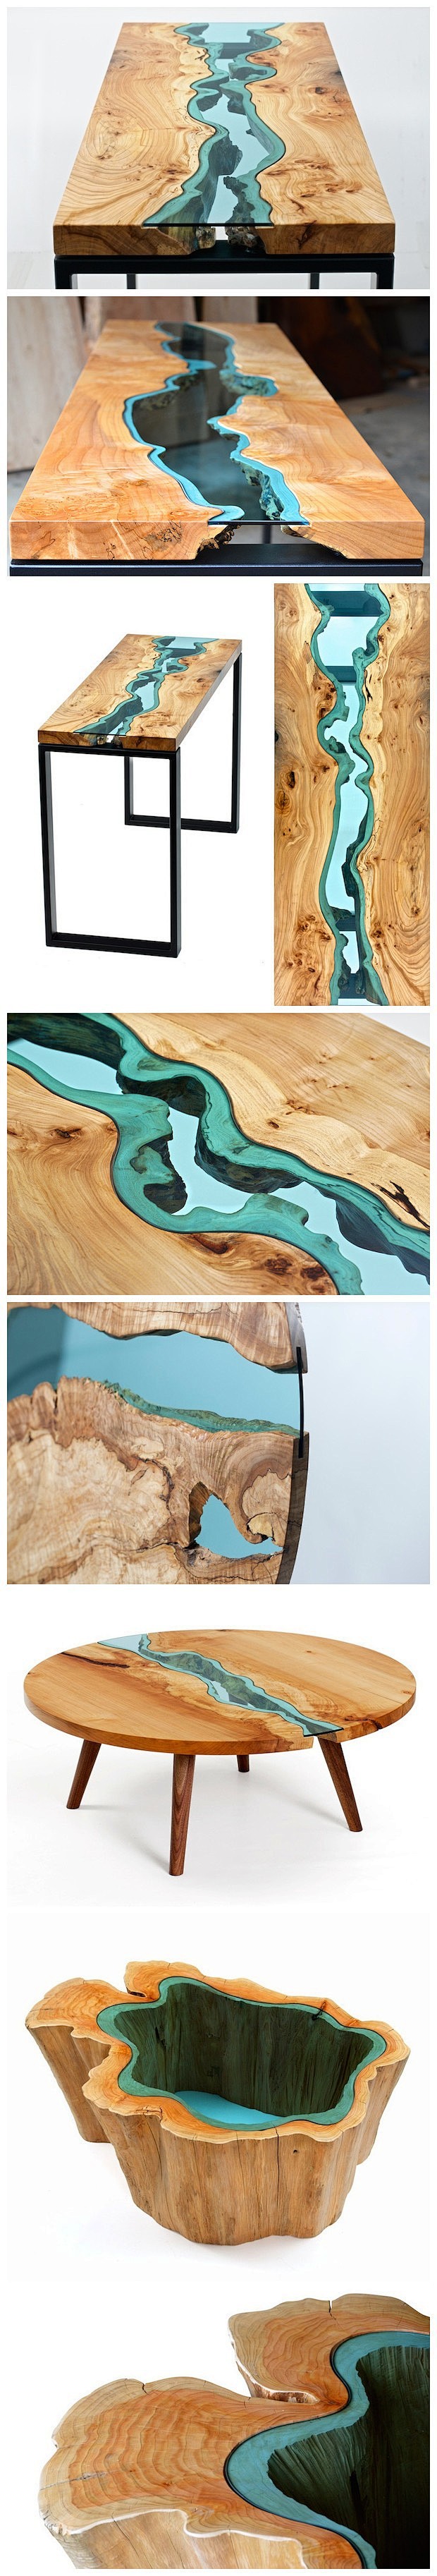 用废木头和玻璃做成的河流桌子 美国西北部...